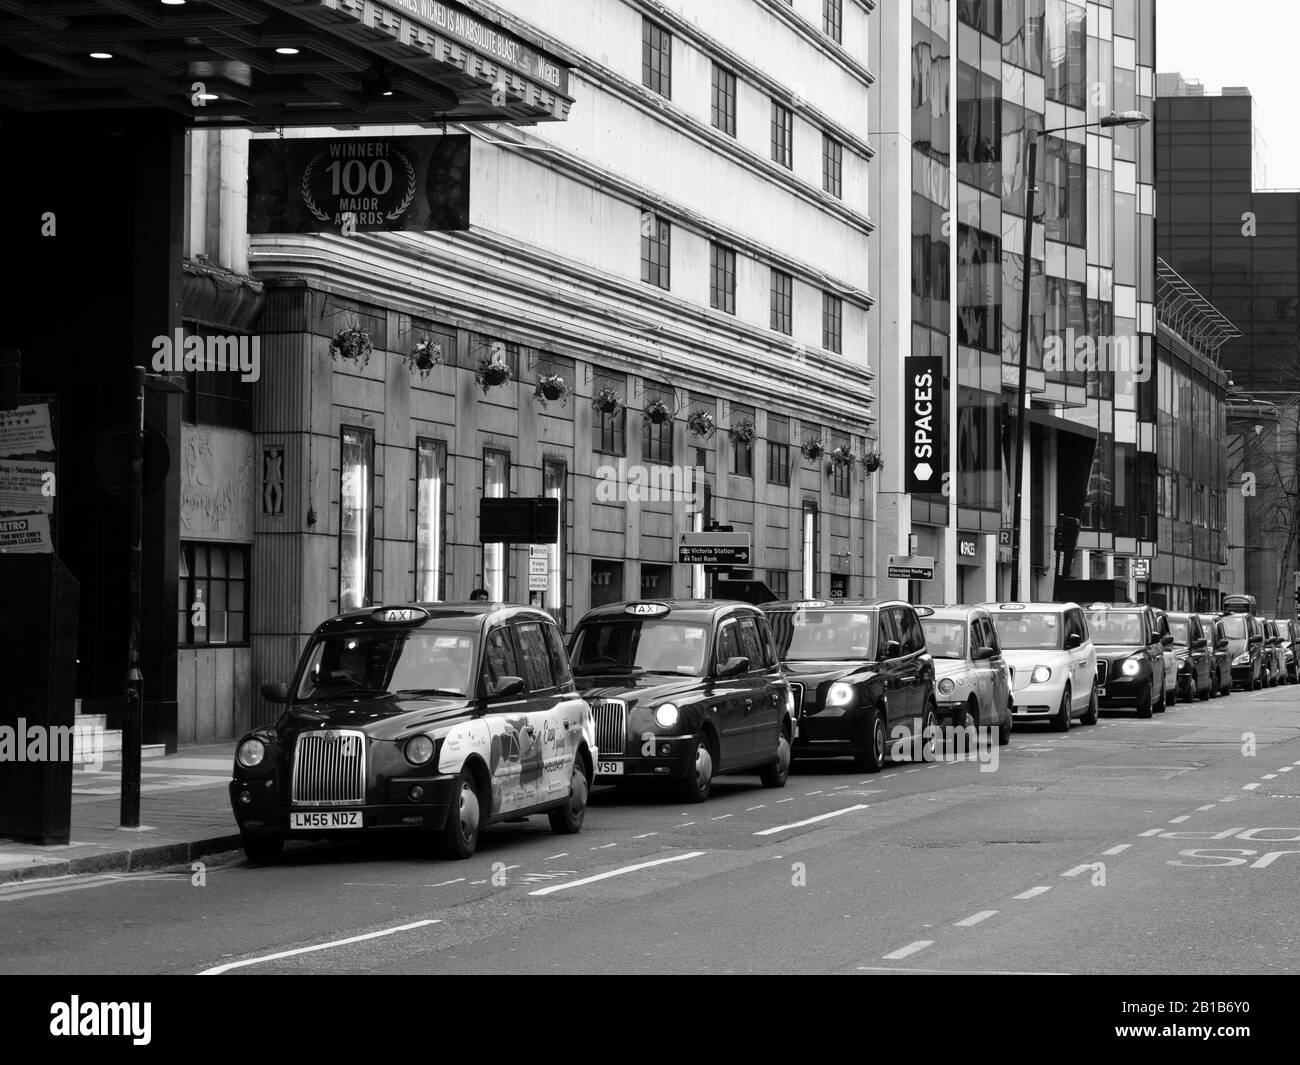 Parcheggio taxi dietro l'angolo dalla stazione ferroviaria di Victoria, Londra. Foto Stock